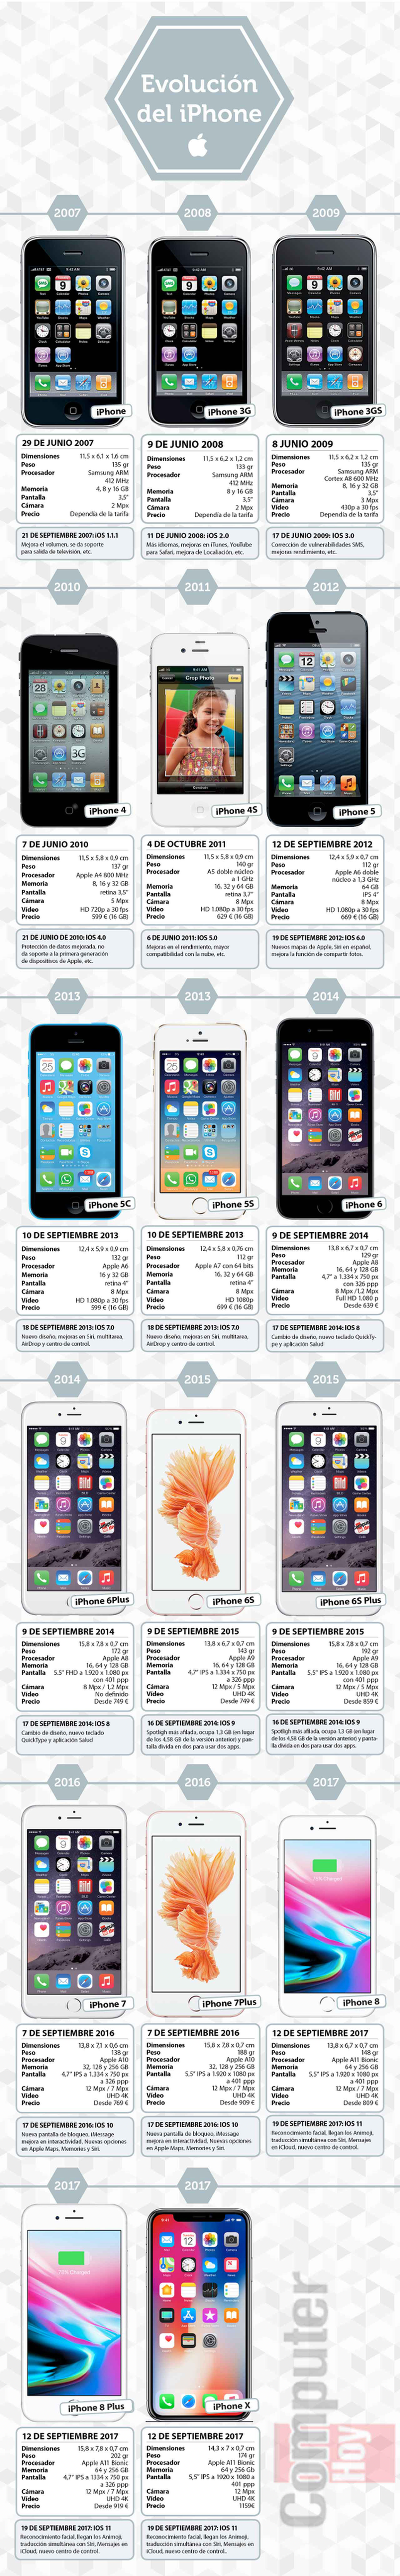 Apple salta al iPhone X pero ¿qué ha sido del iPhone 9?